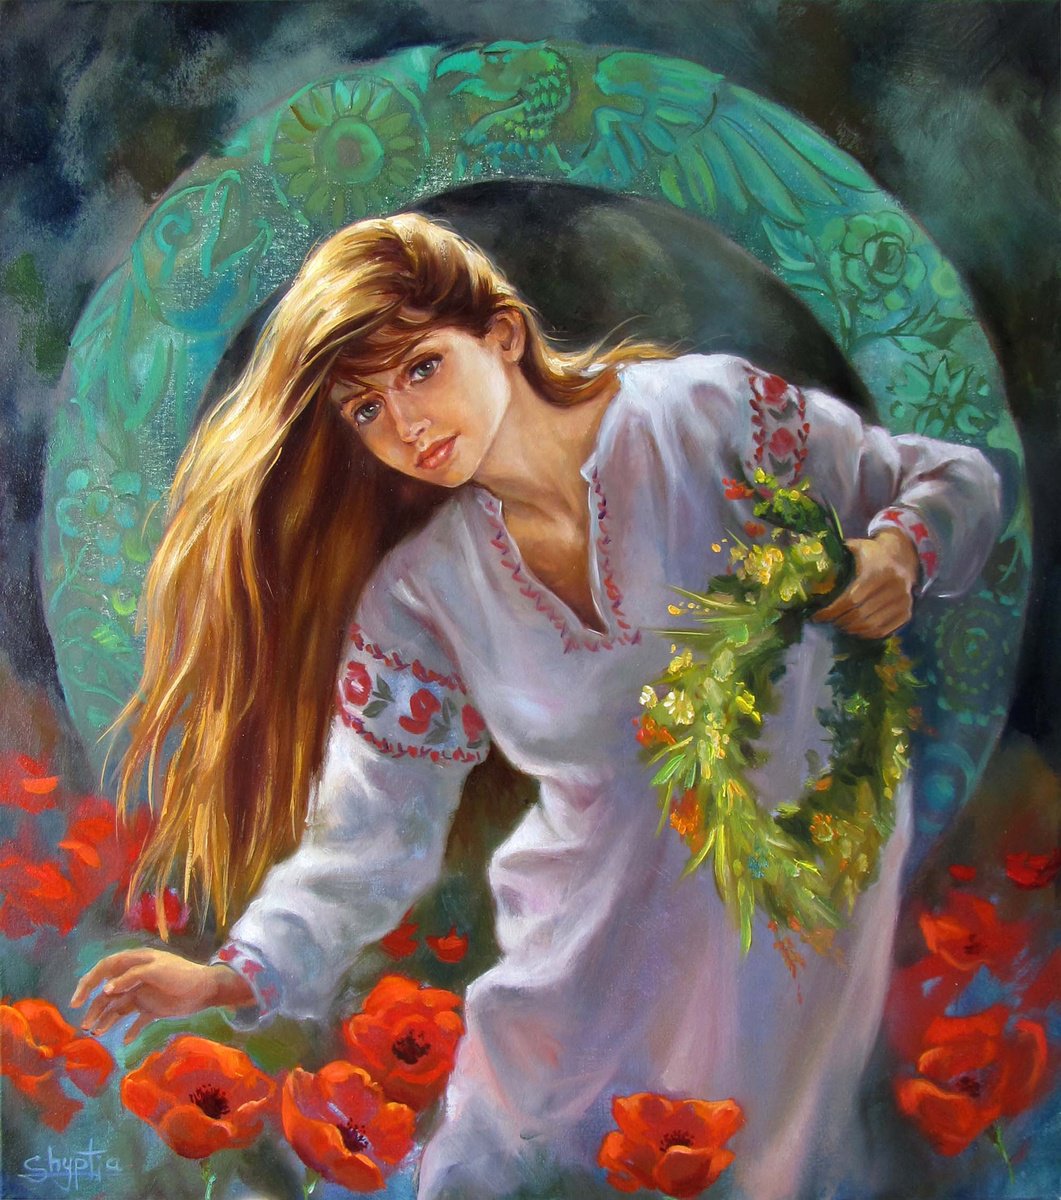 Red flowers by Kostiantyn Shyptia